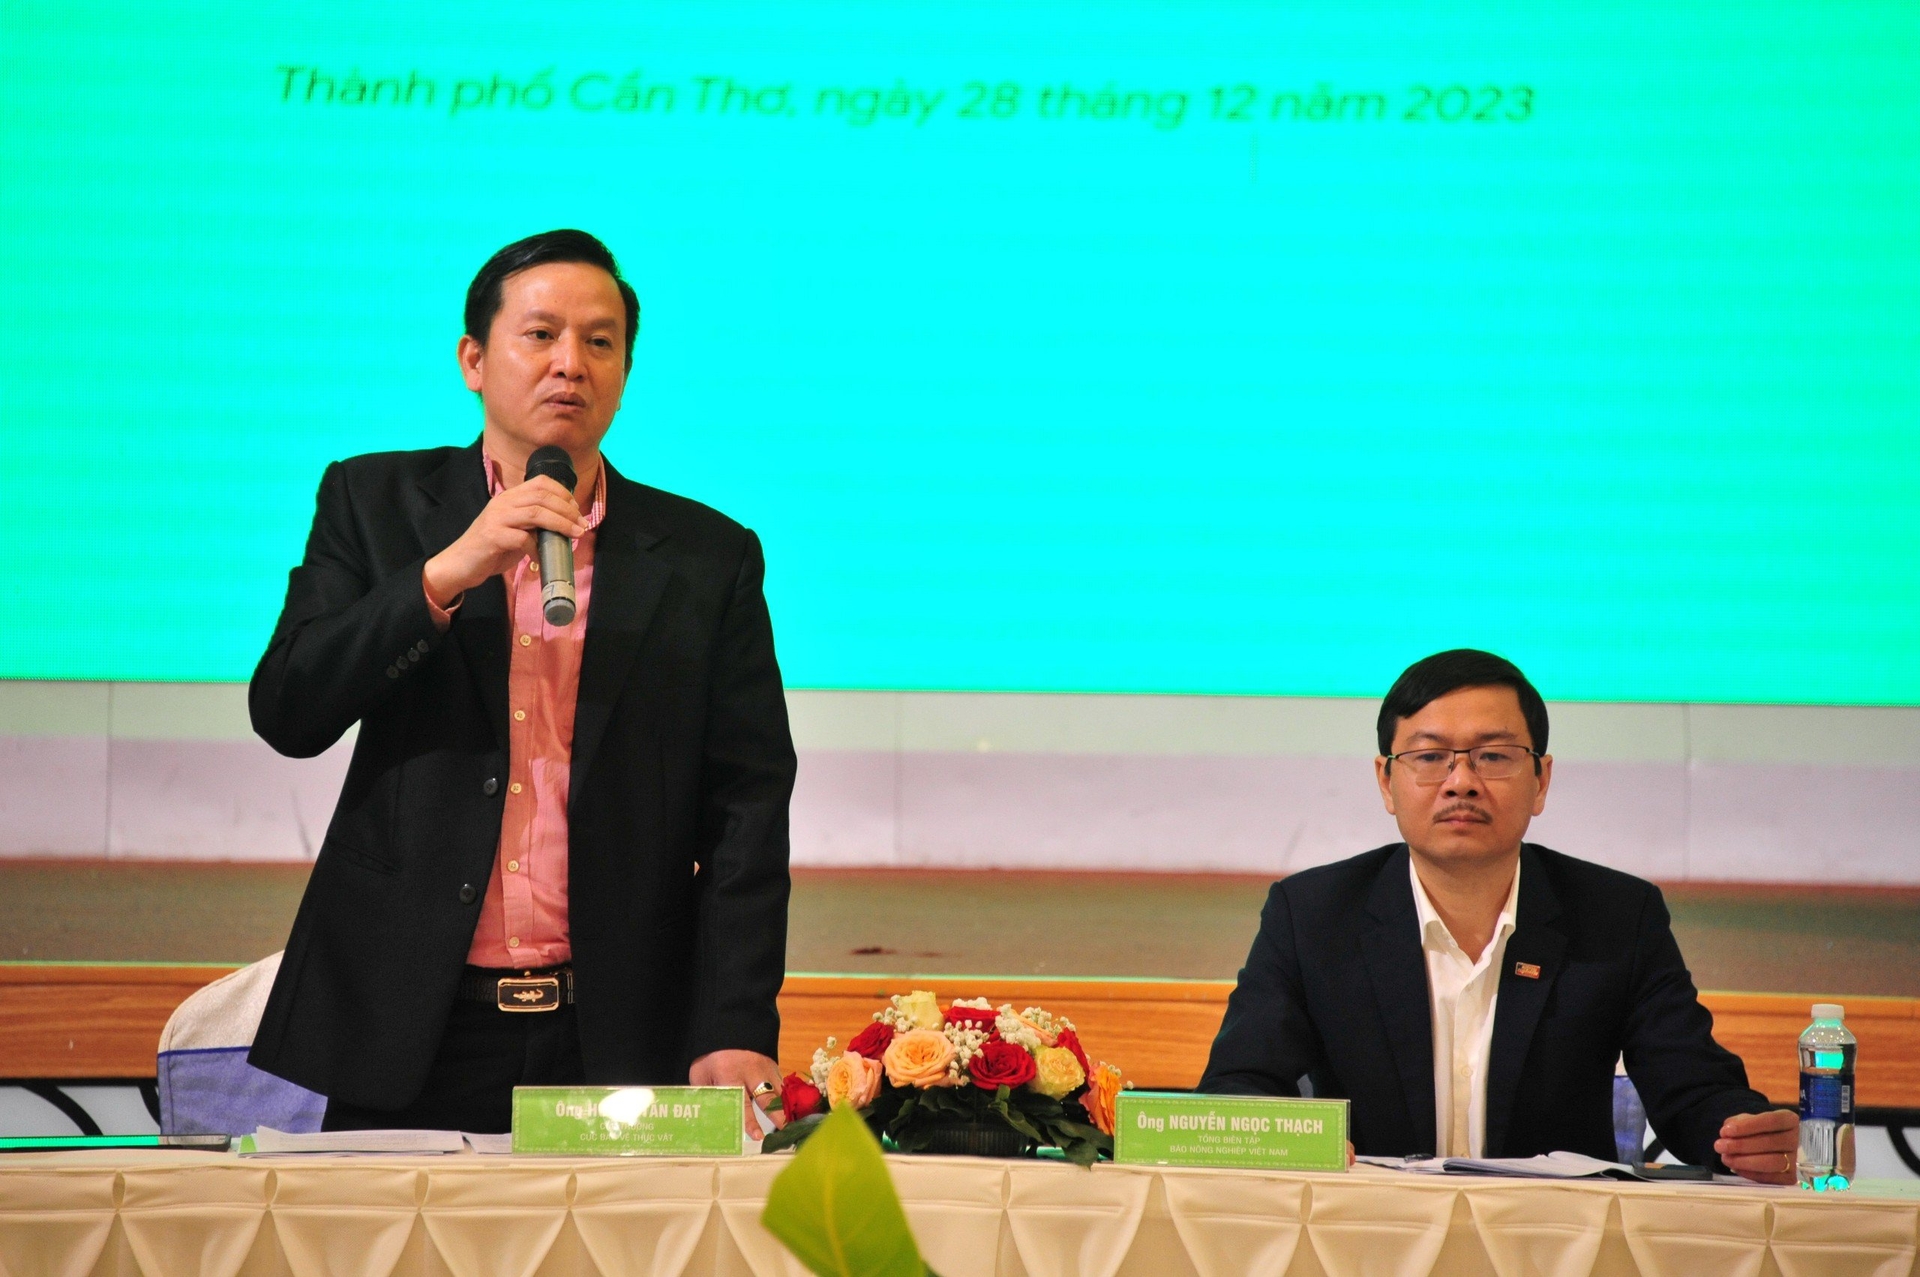 Báo Nông nghiệp Việt Nam phối hợp với Cục Bảo vệ thực vật (Bộ NN-PTNT) tổ chức Diễn đàn 'Thực trạng sản xuất, kinh doanh, sử dụng thuốc bảo vệ thực vật tại Việt Nam và giải pháp phát triển bền vững'.